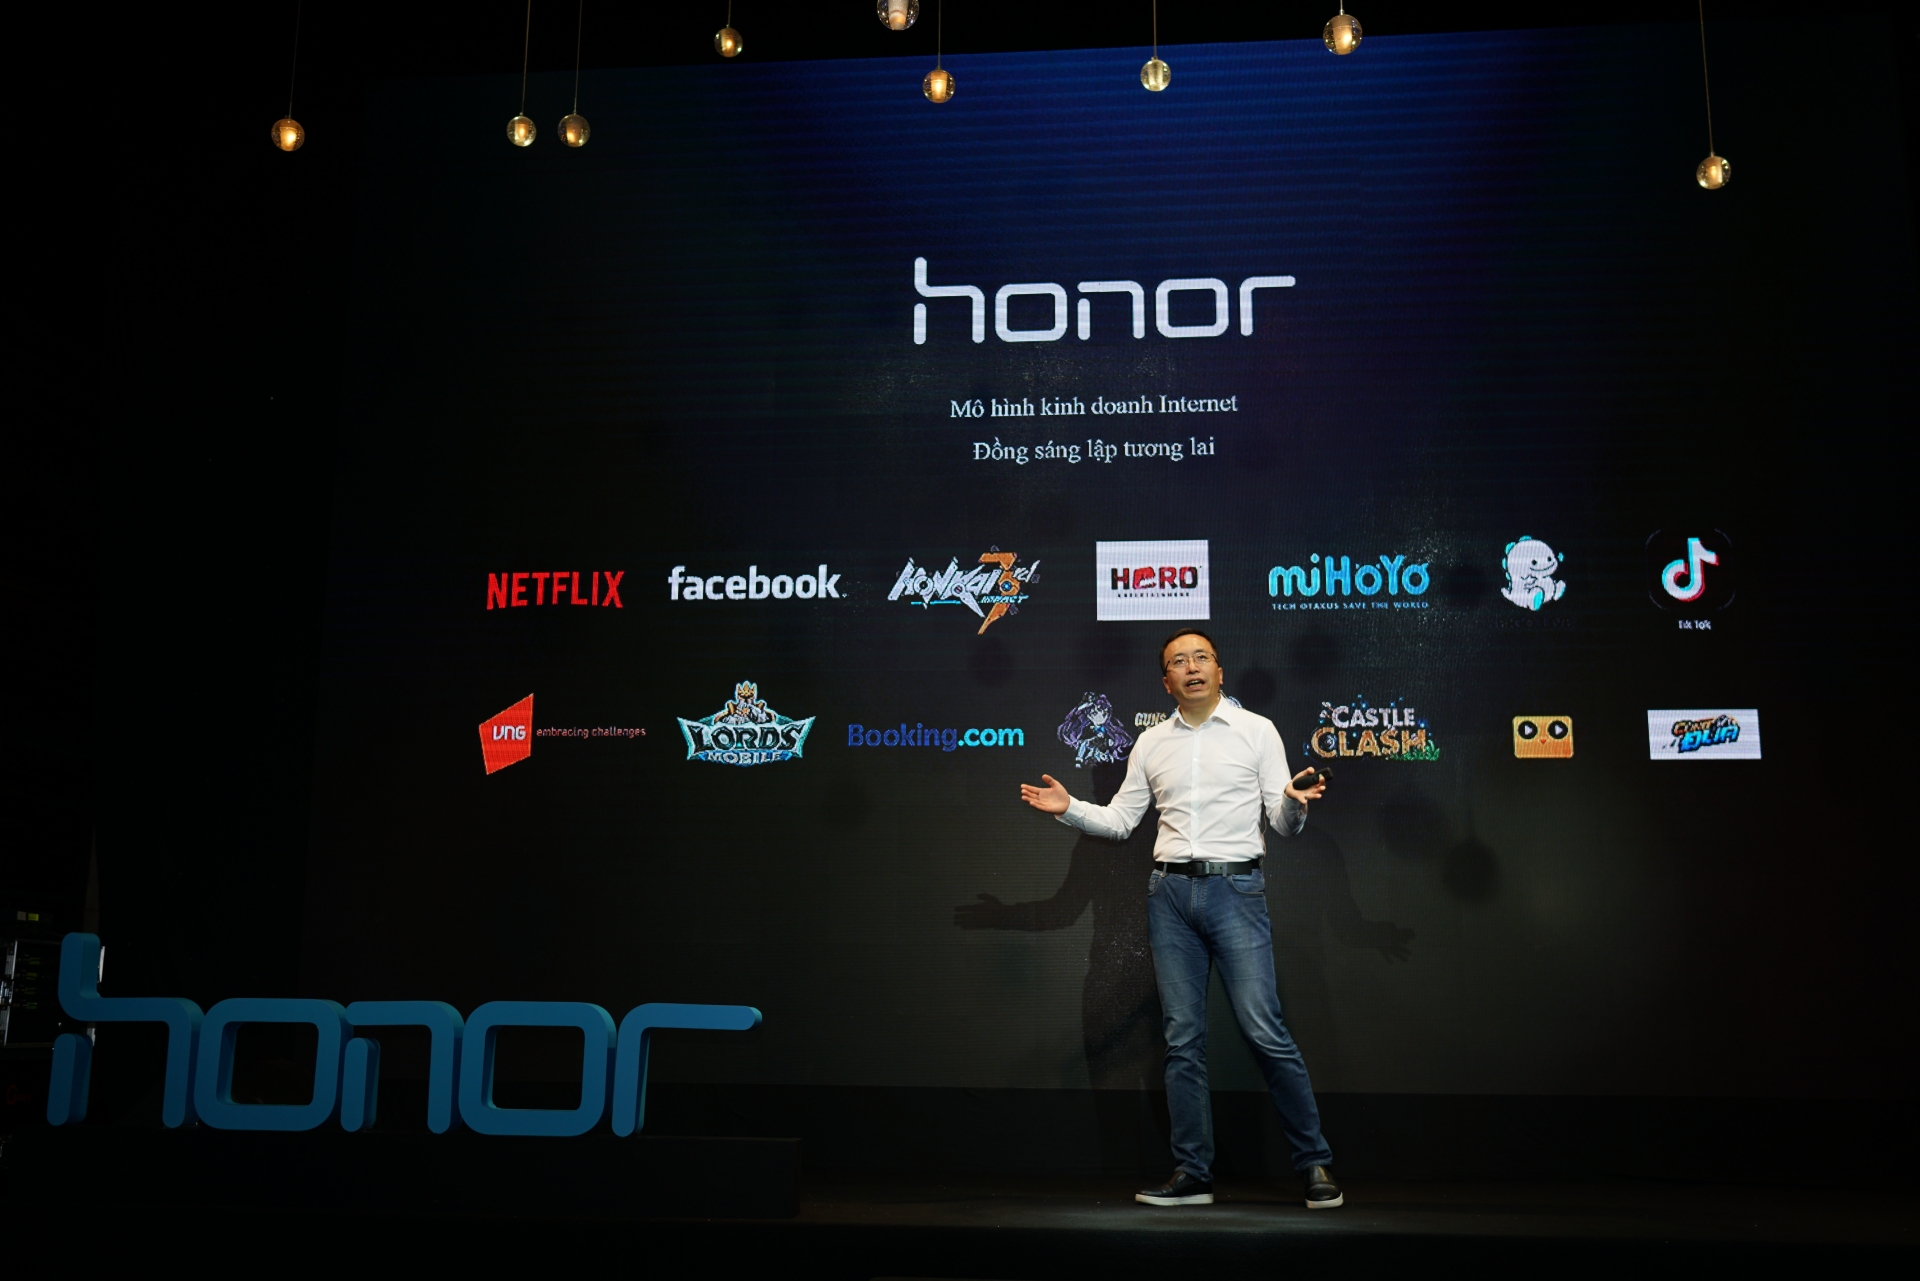 honor aims to break into vietnams top 3 smartphone brands